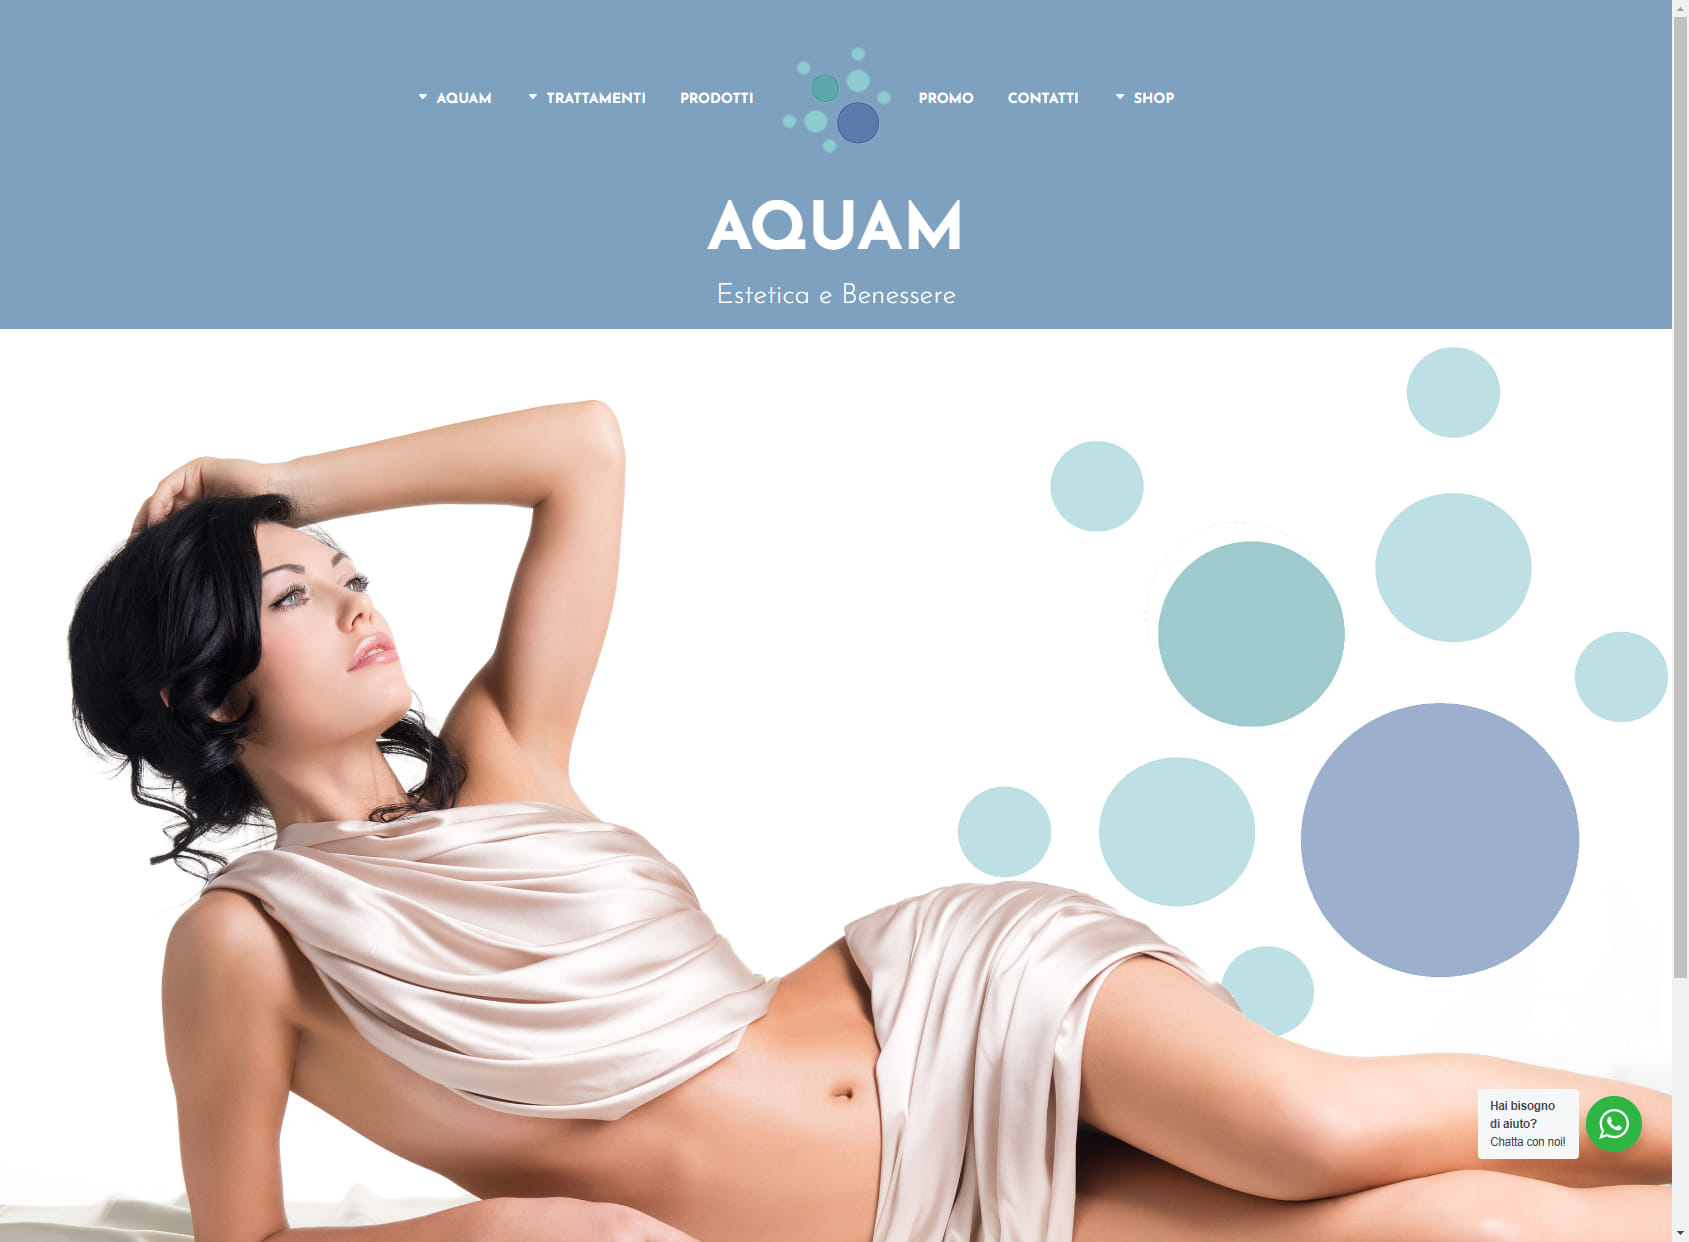 Aquam Beauty and Wellness